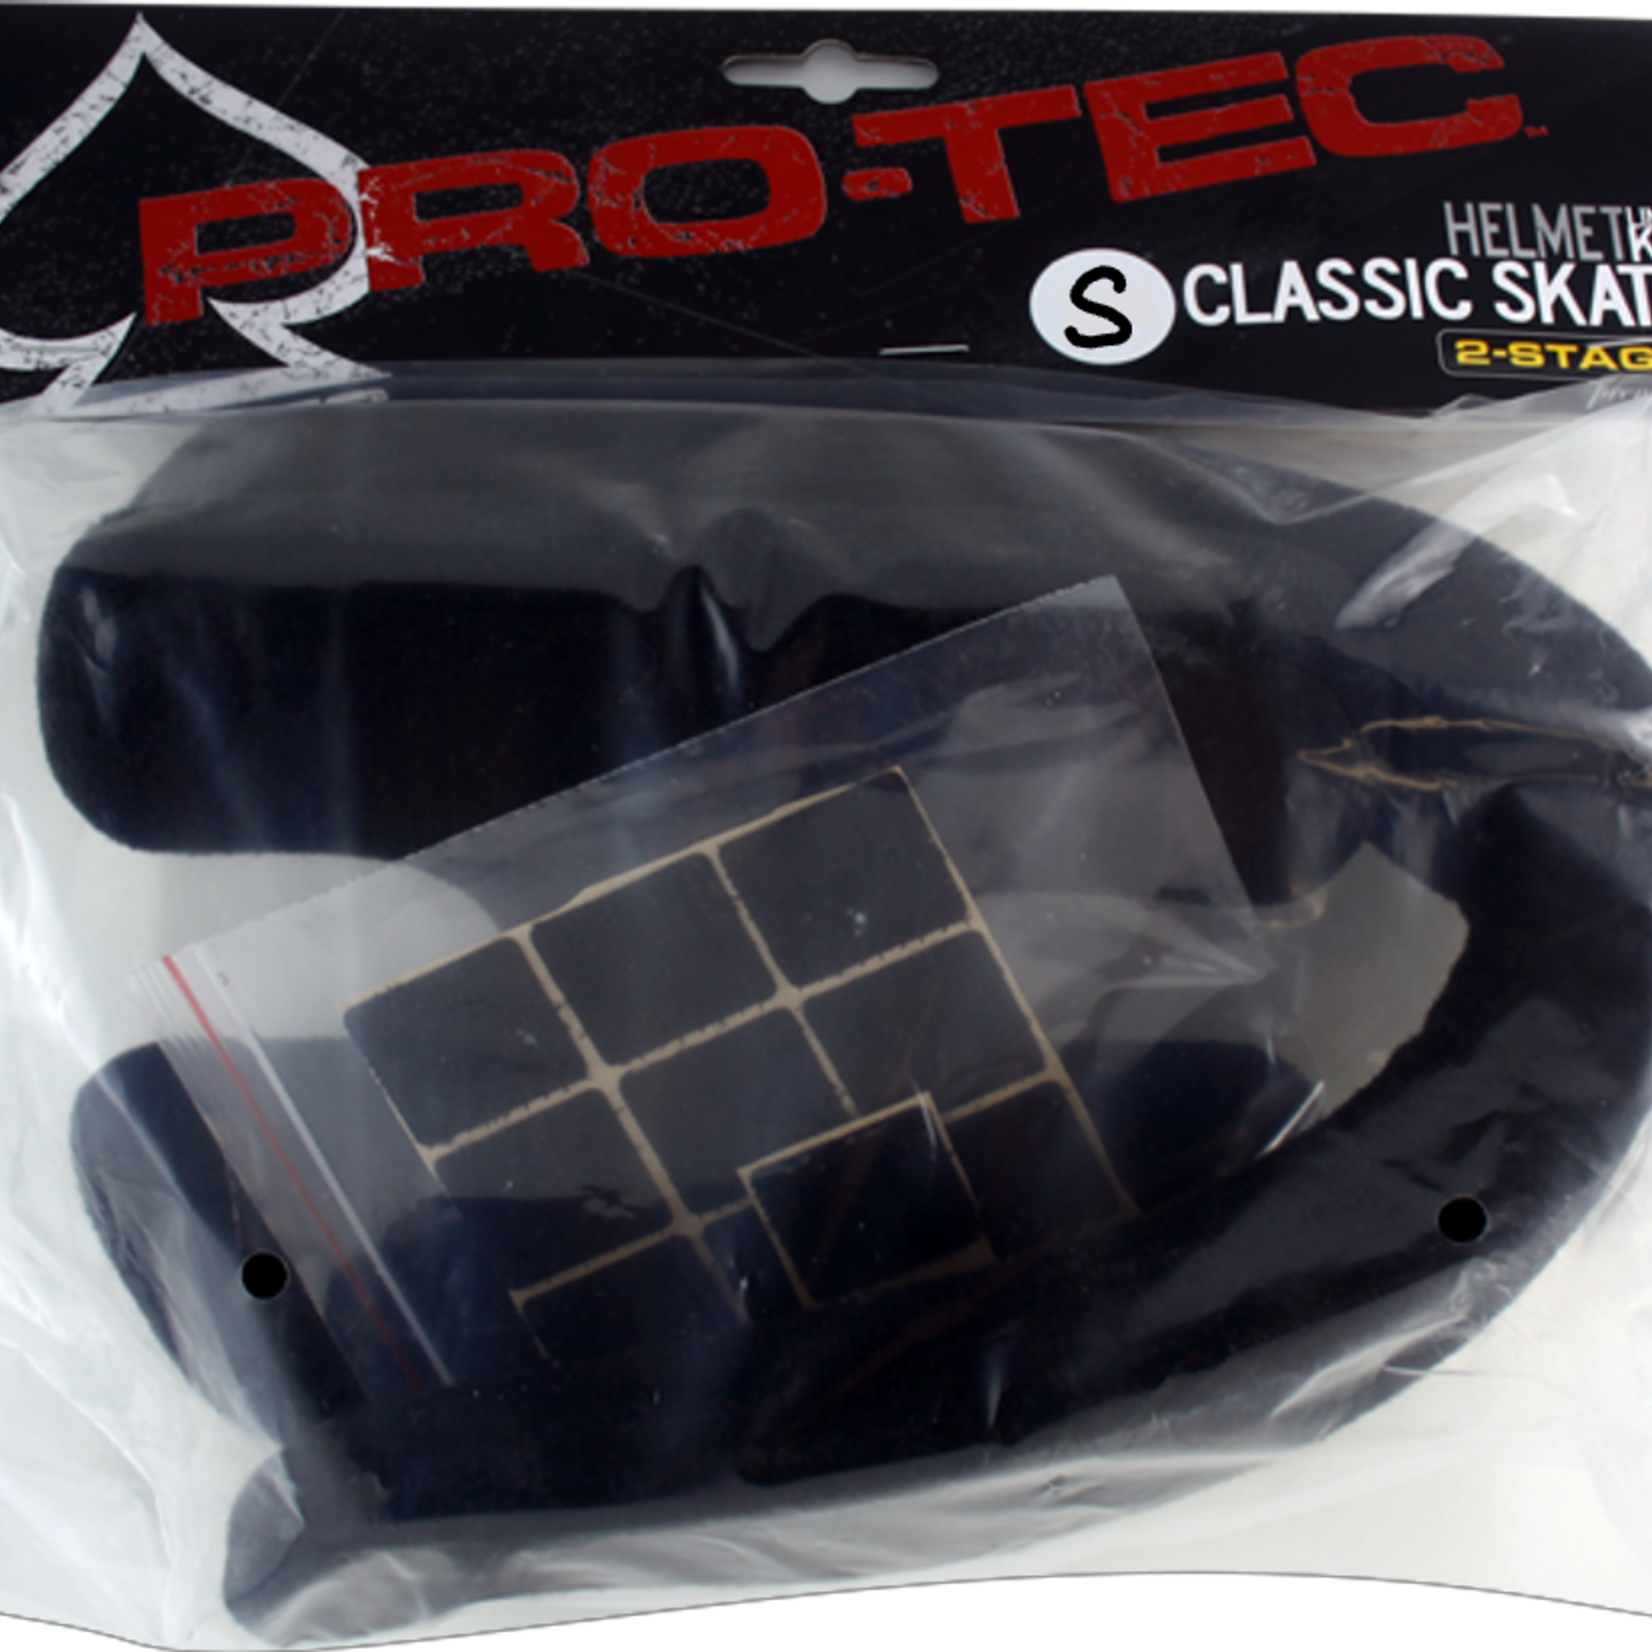 PRO-TEC Pro-Tec Classic Skate Liner Kit-Black